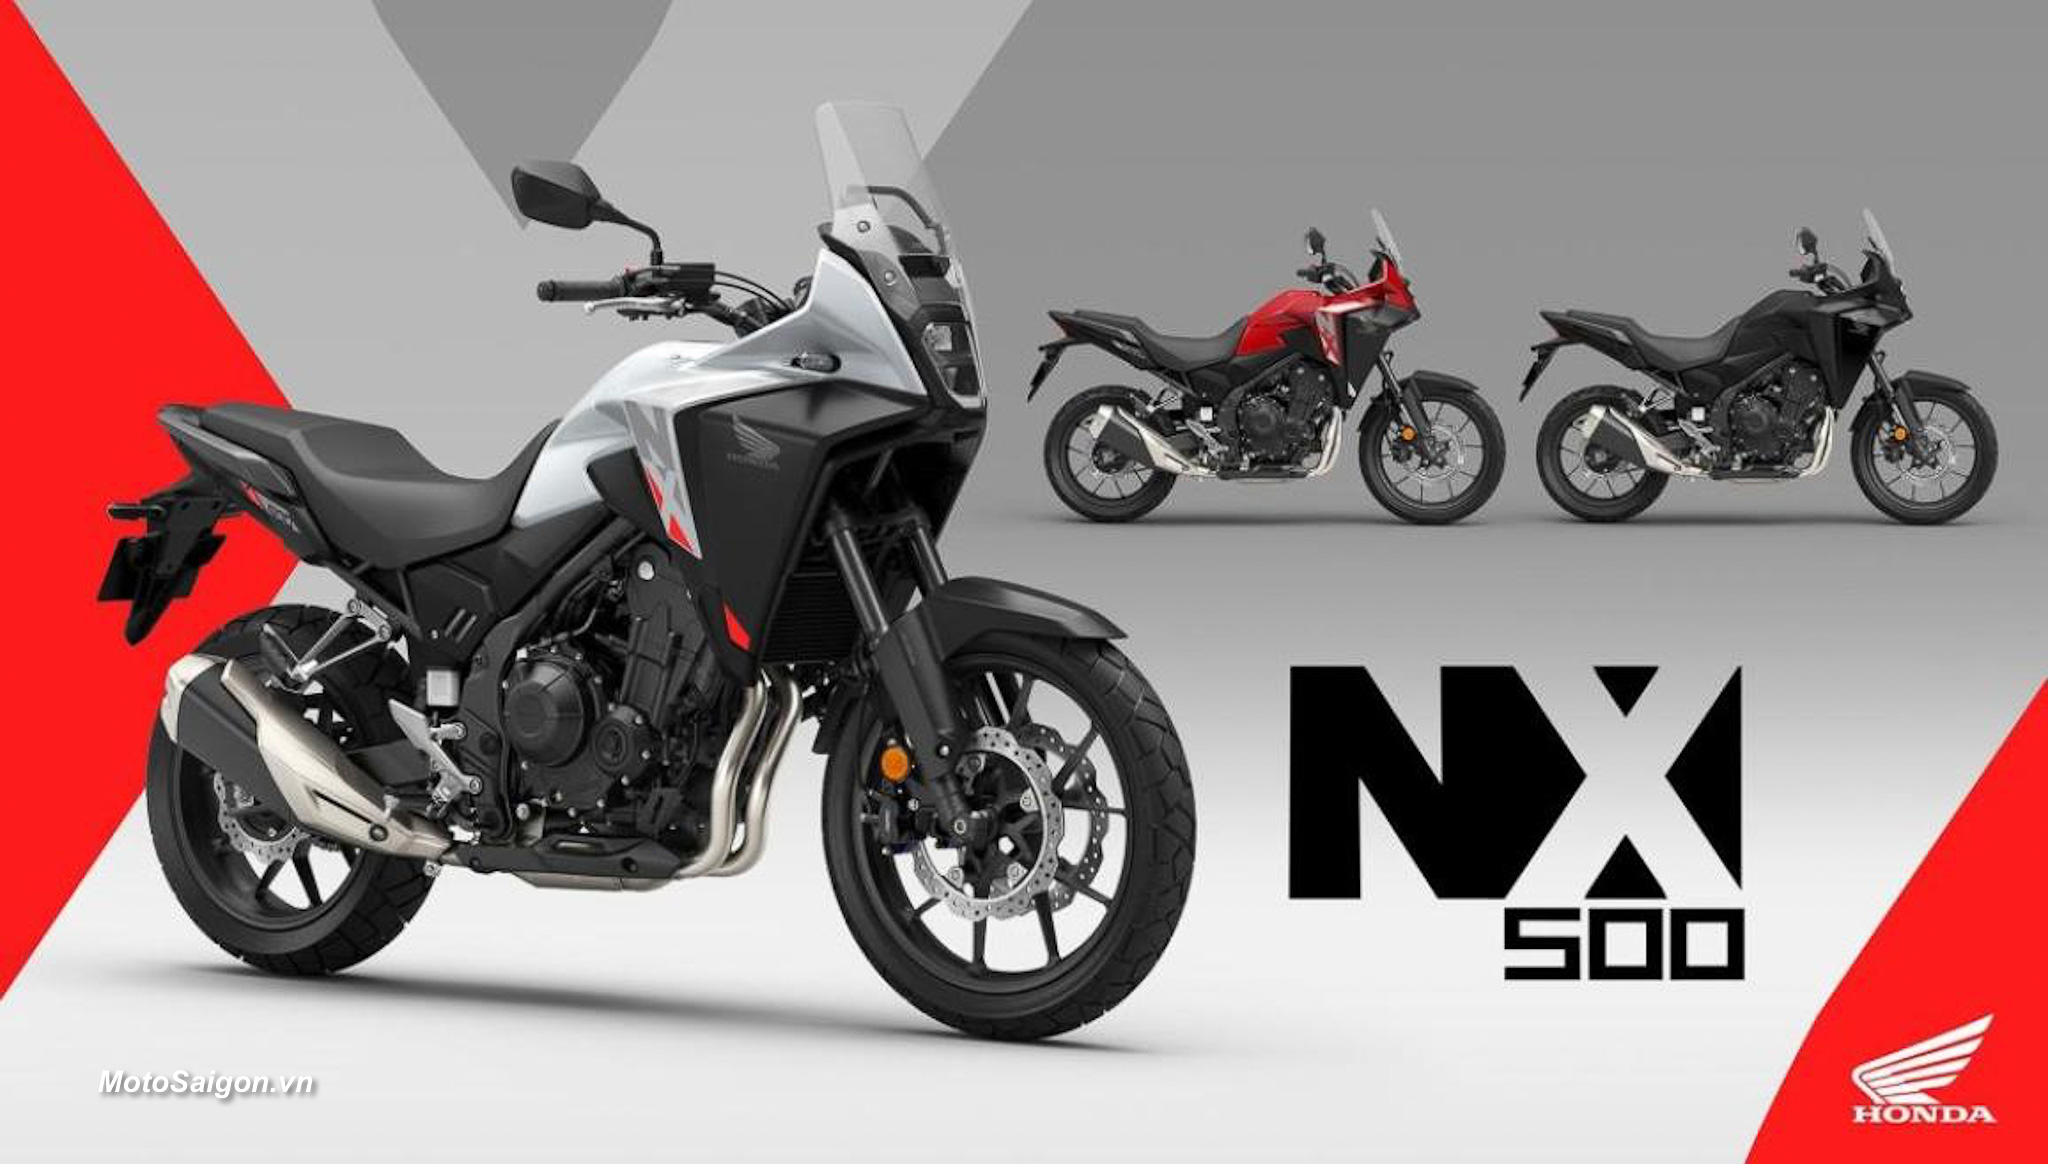 Honda NX500 giá xe hình ảnh thông số kỹ thuật mới nhất